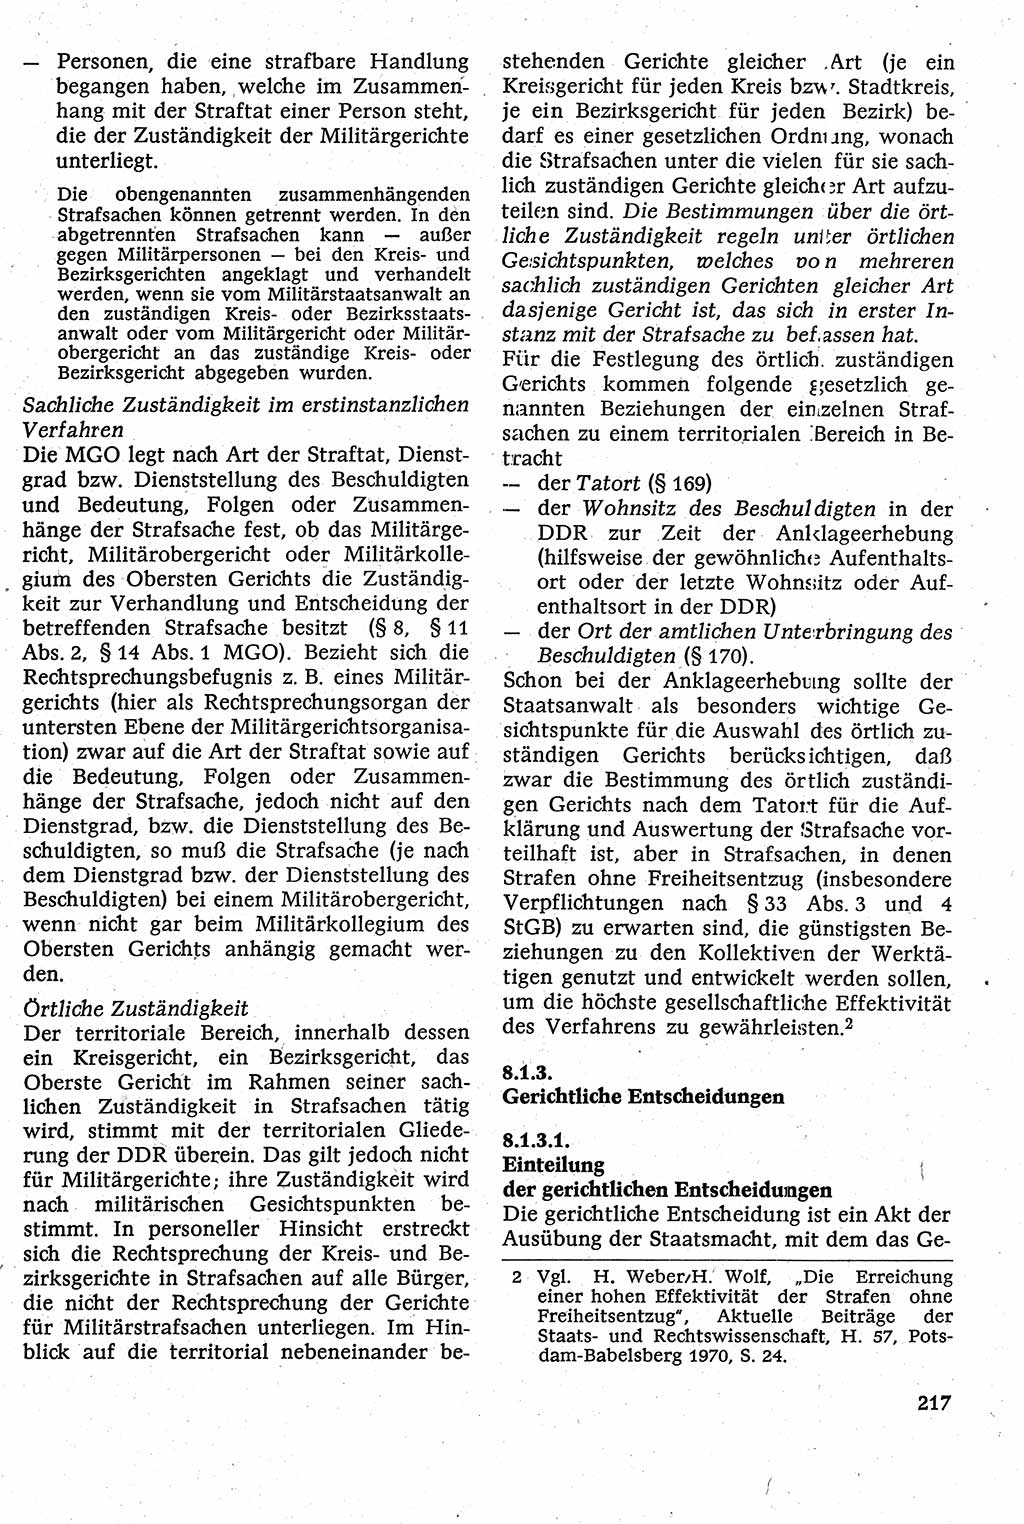 Strafverfahrensrecht [Deutsche Demokratische Republik (DDR)], Lehrbuch 1982, Seite 217 (Strafverf.-R. DDR Lb. 1982, S. 217)